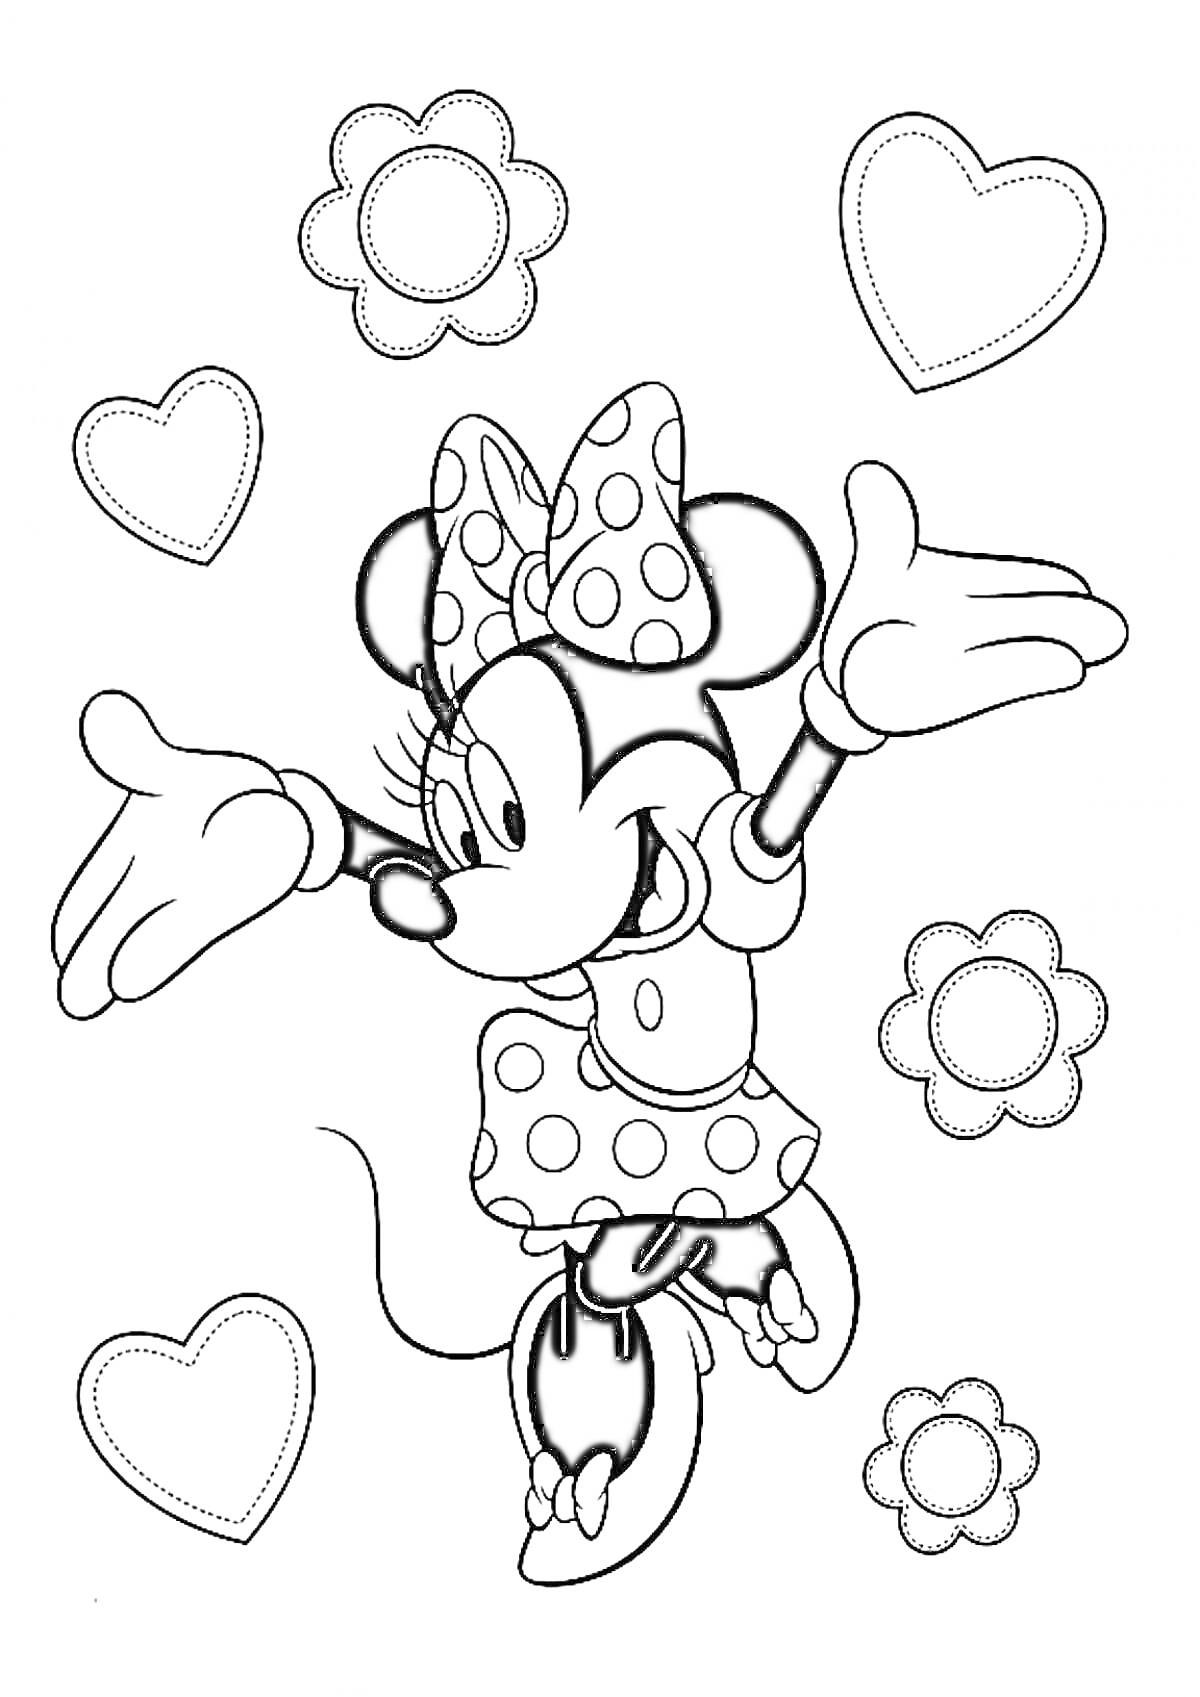 Раскраска Мини Маус в платье с бантом, окруженная цветами и сердечками